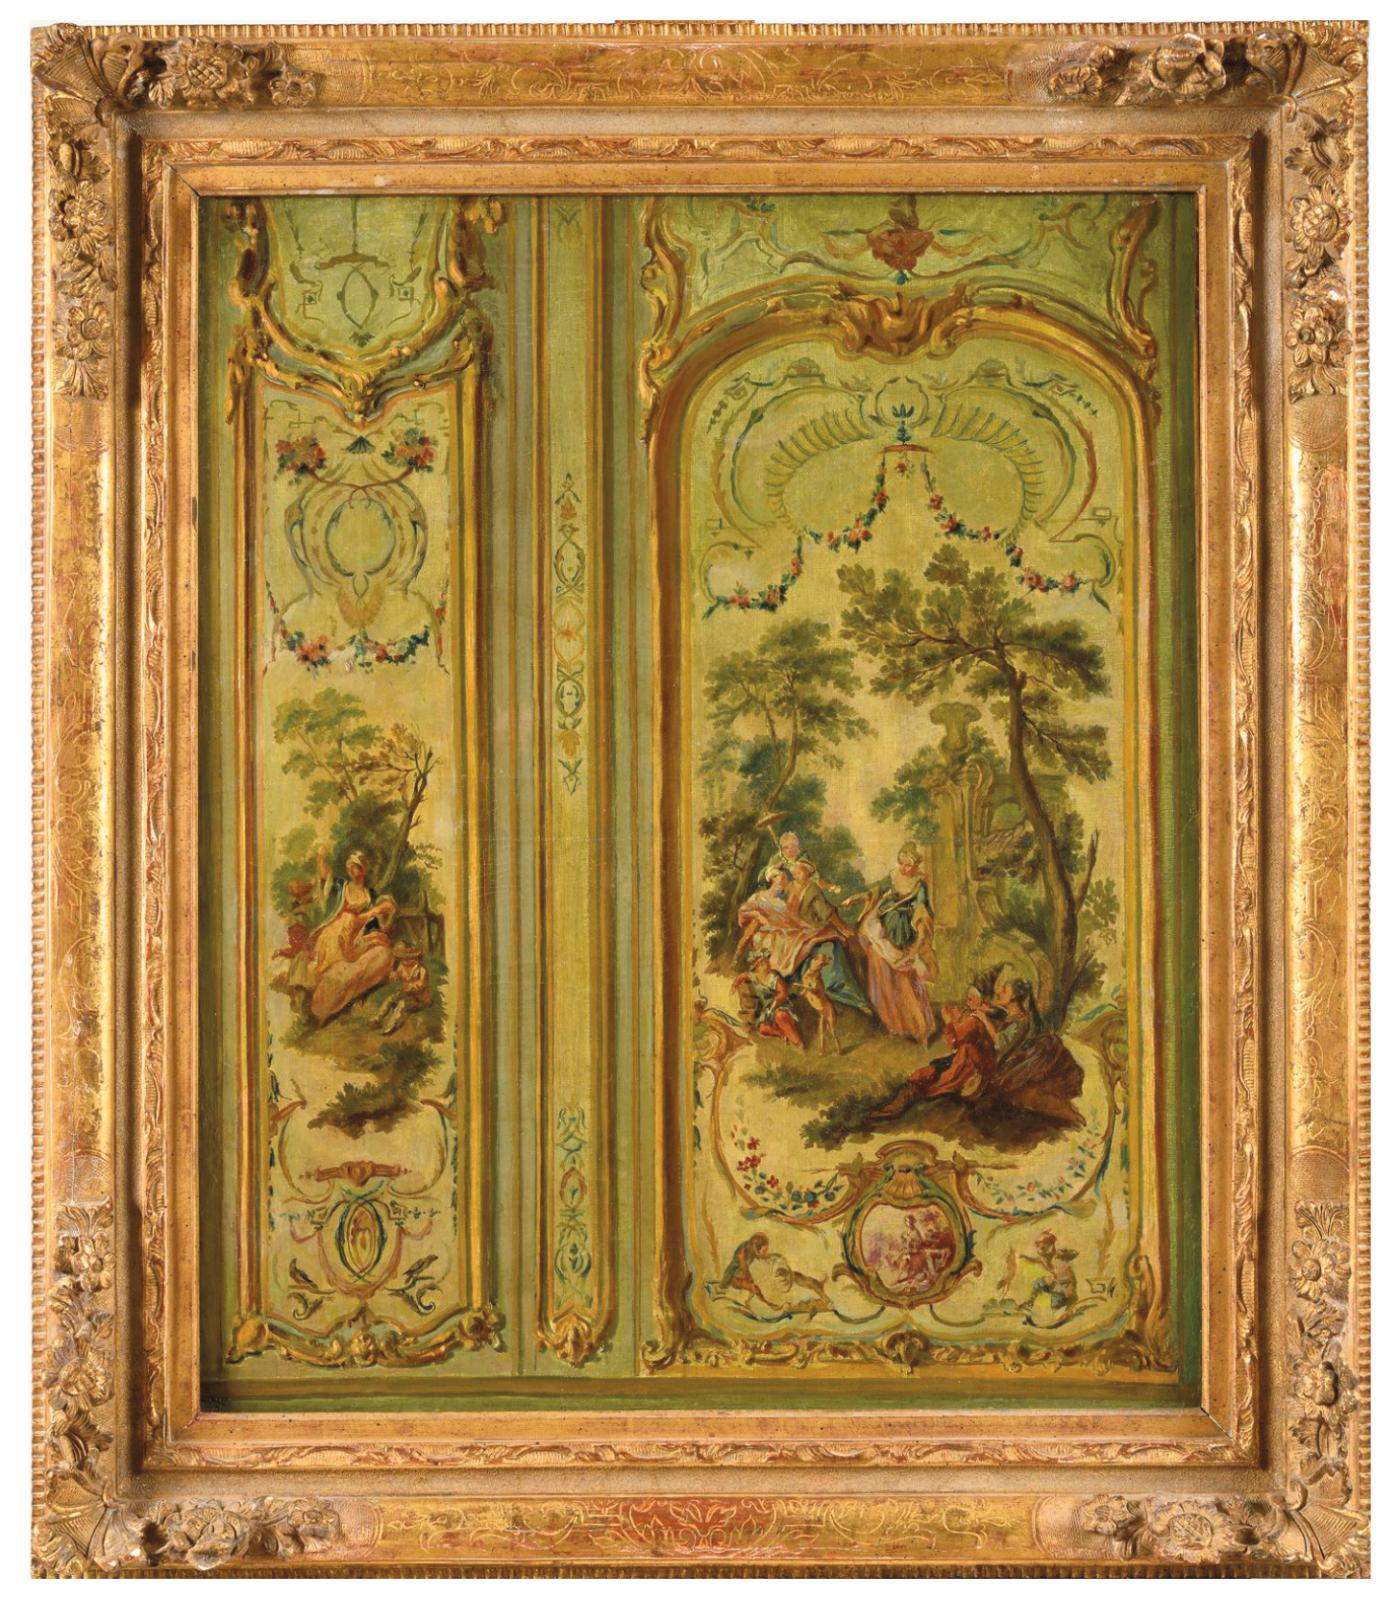 École française du XIXe siècle d’après Christophe Huet, Le Cabinet des singes, huile sur toile, 65 x 53,5 cm. Versailles, Hôtel des ventes